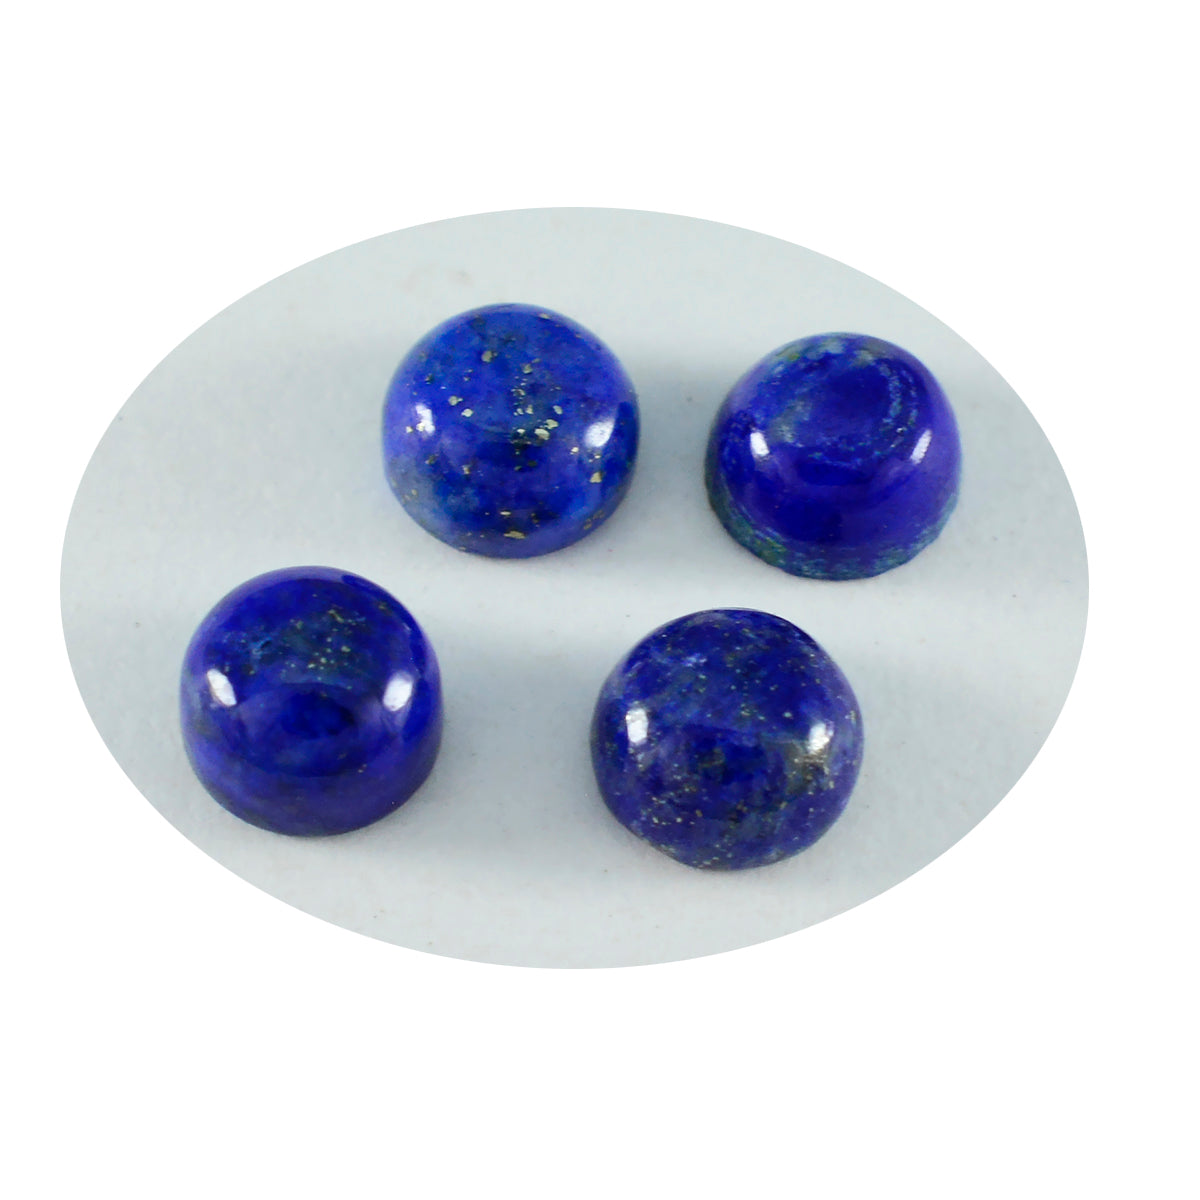 riyogems 1 шт. синий лазурит кабошон 6x6 мм круглой формы красивые качественные свободные драгоценные камни